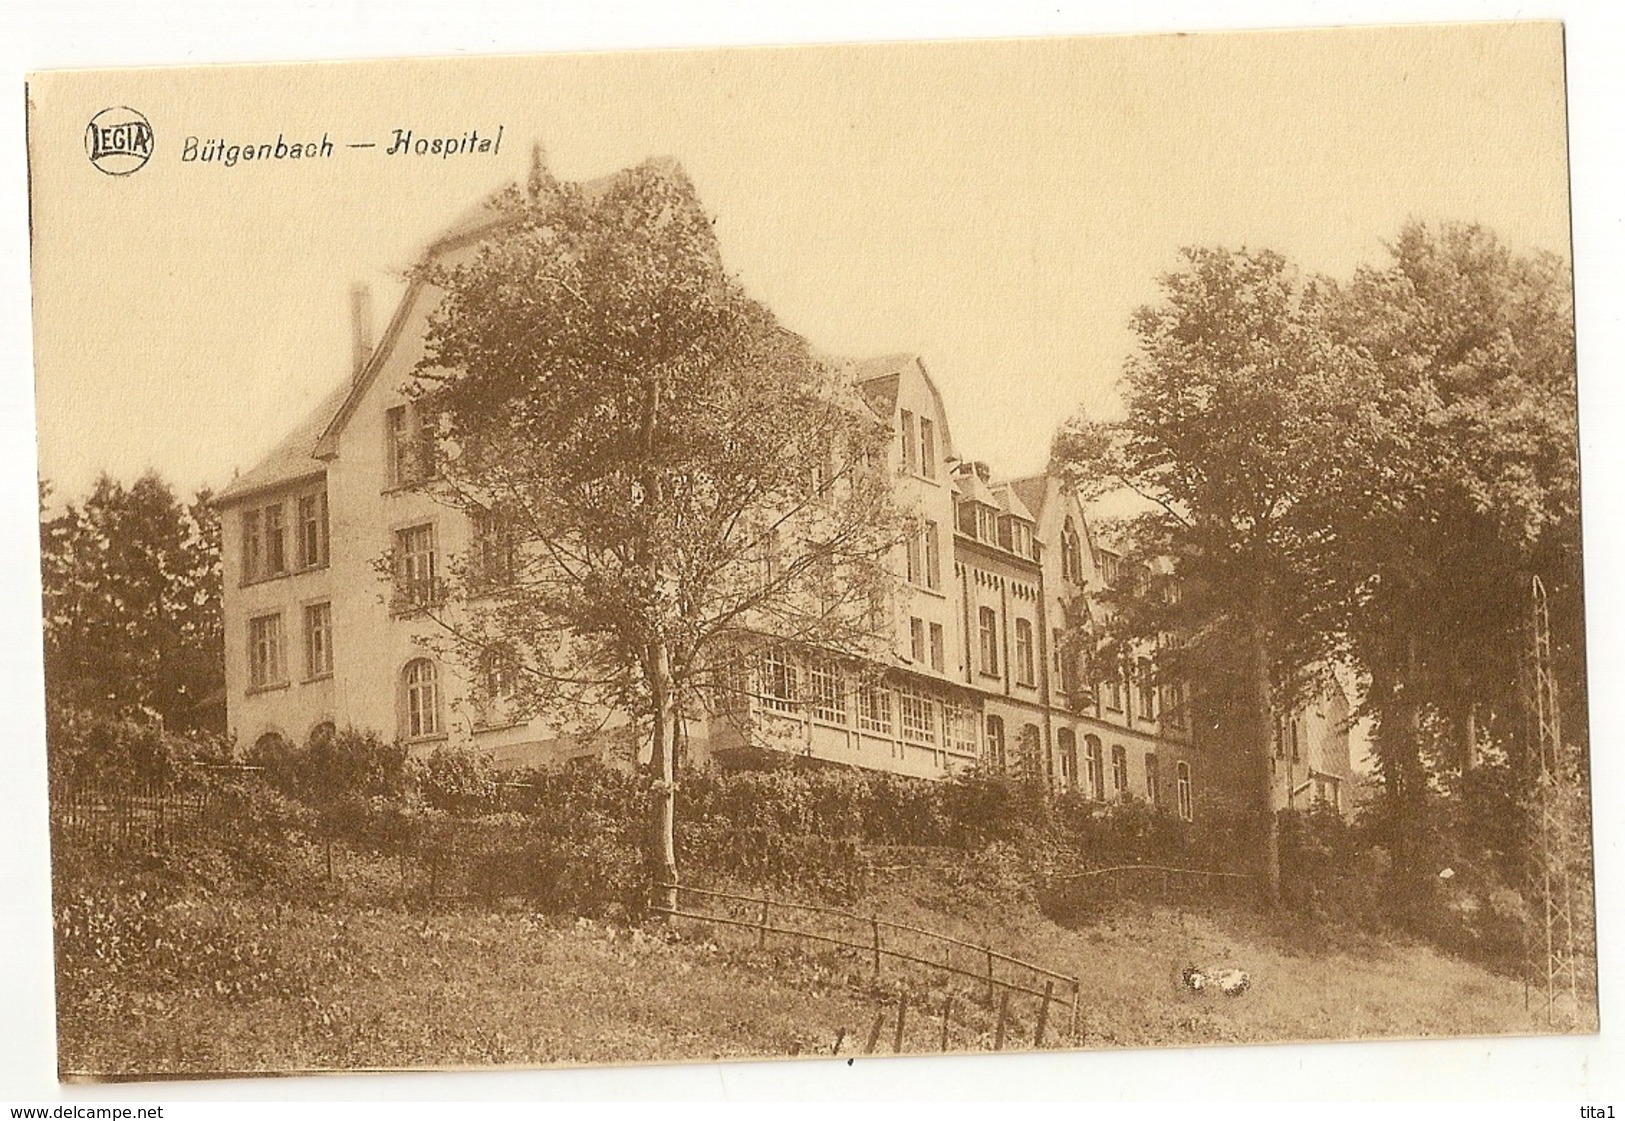 4 - Bütgenbach - Hospital - Butgenbach - Bütgenbach